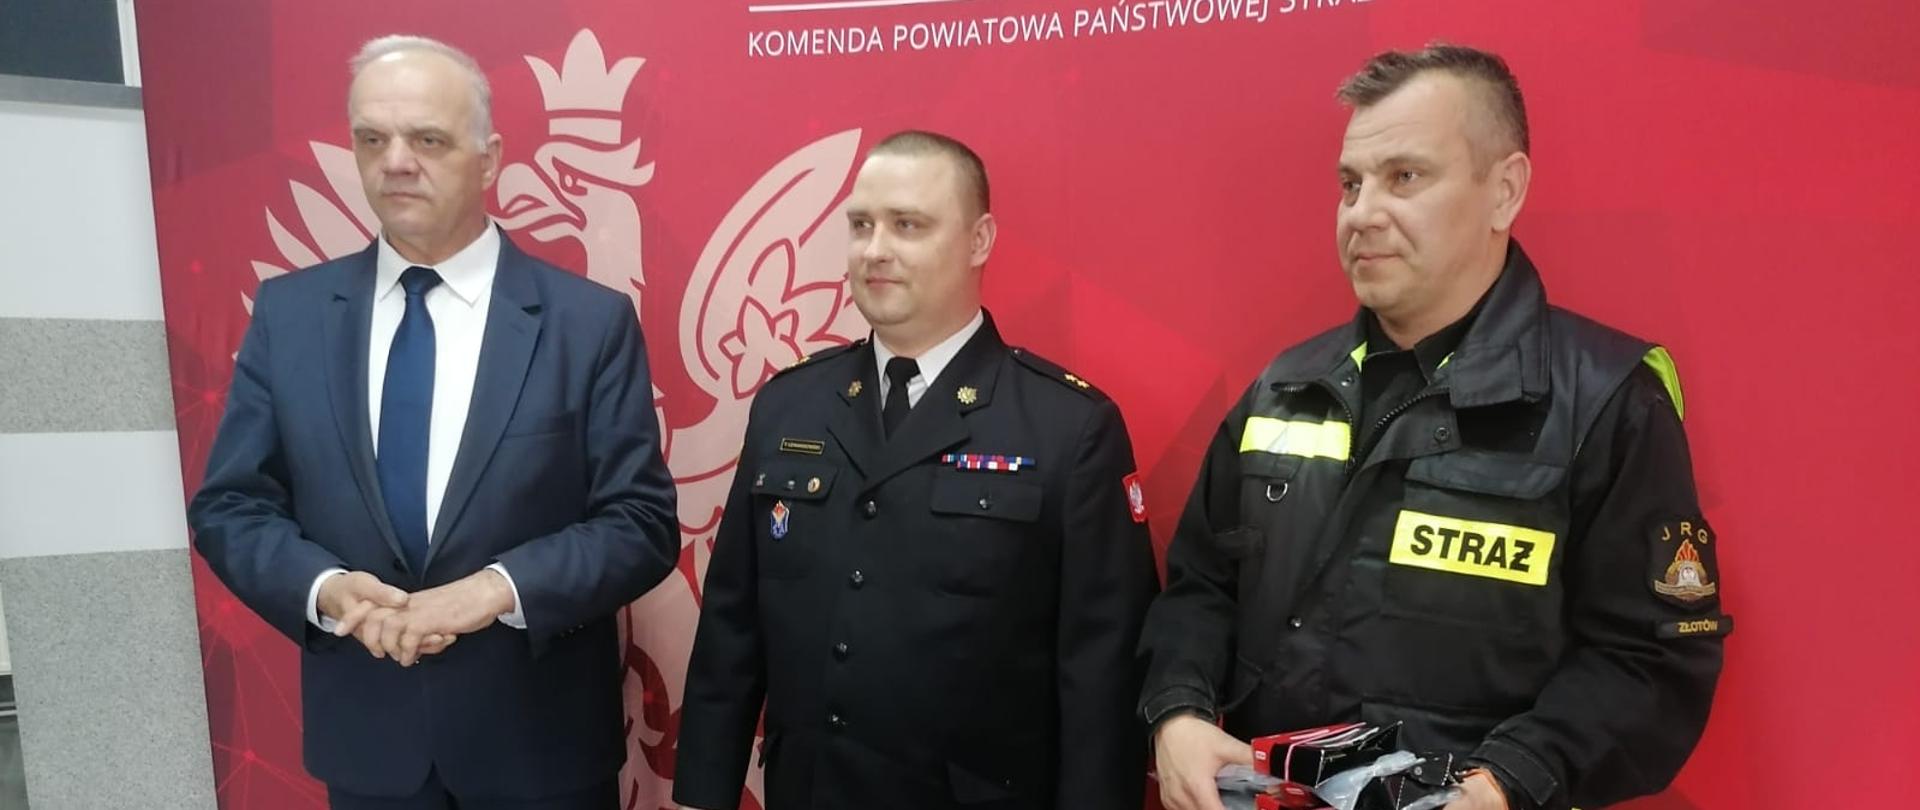 Na zdjęciu Komendant Powiatowy PSP Złotów oraz starosta Złotowski wraz z strażakiem z gminy Okonek